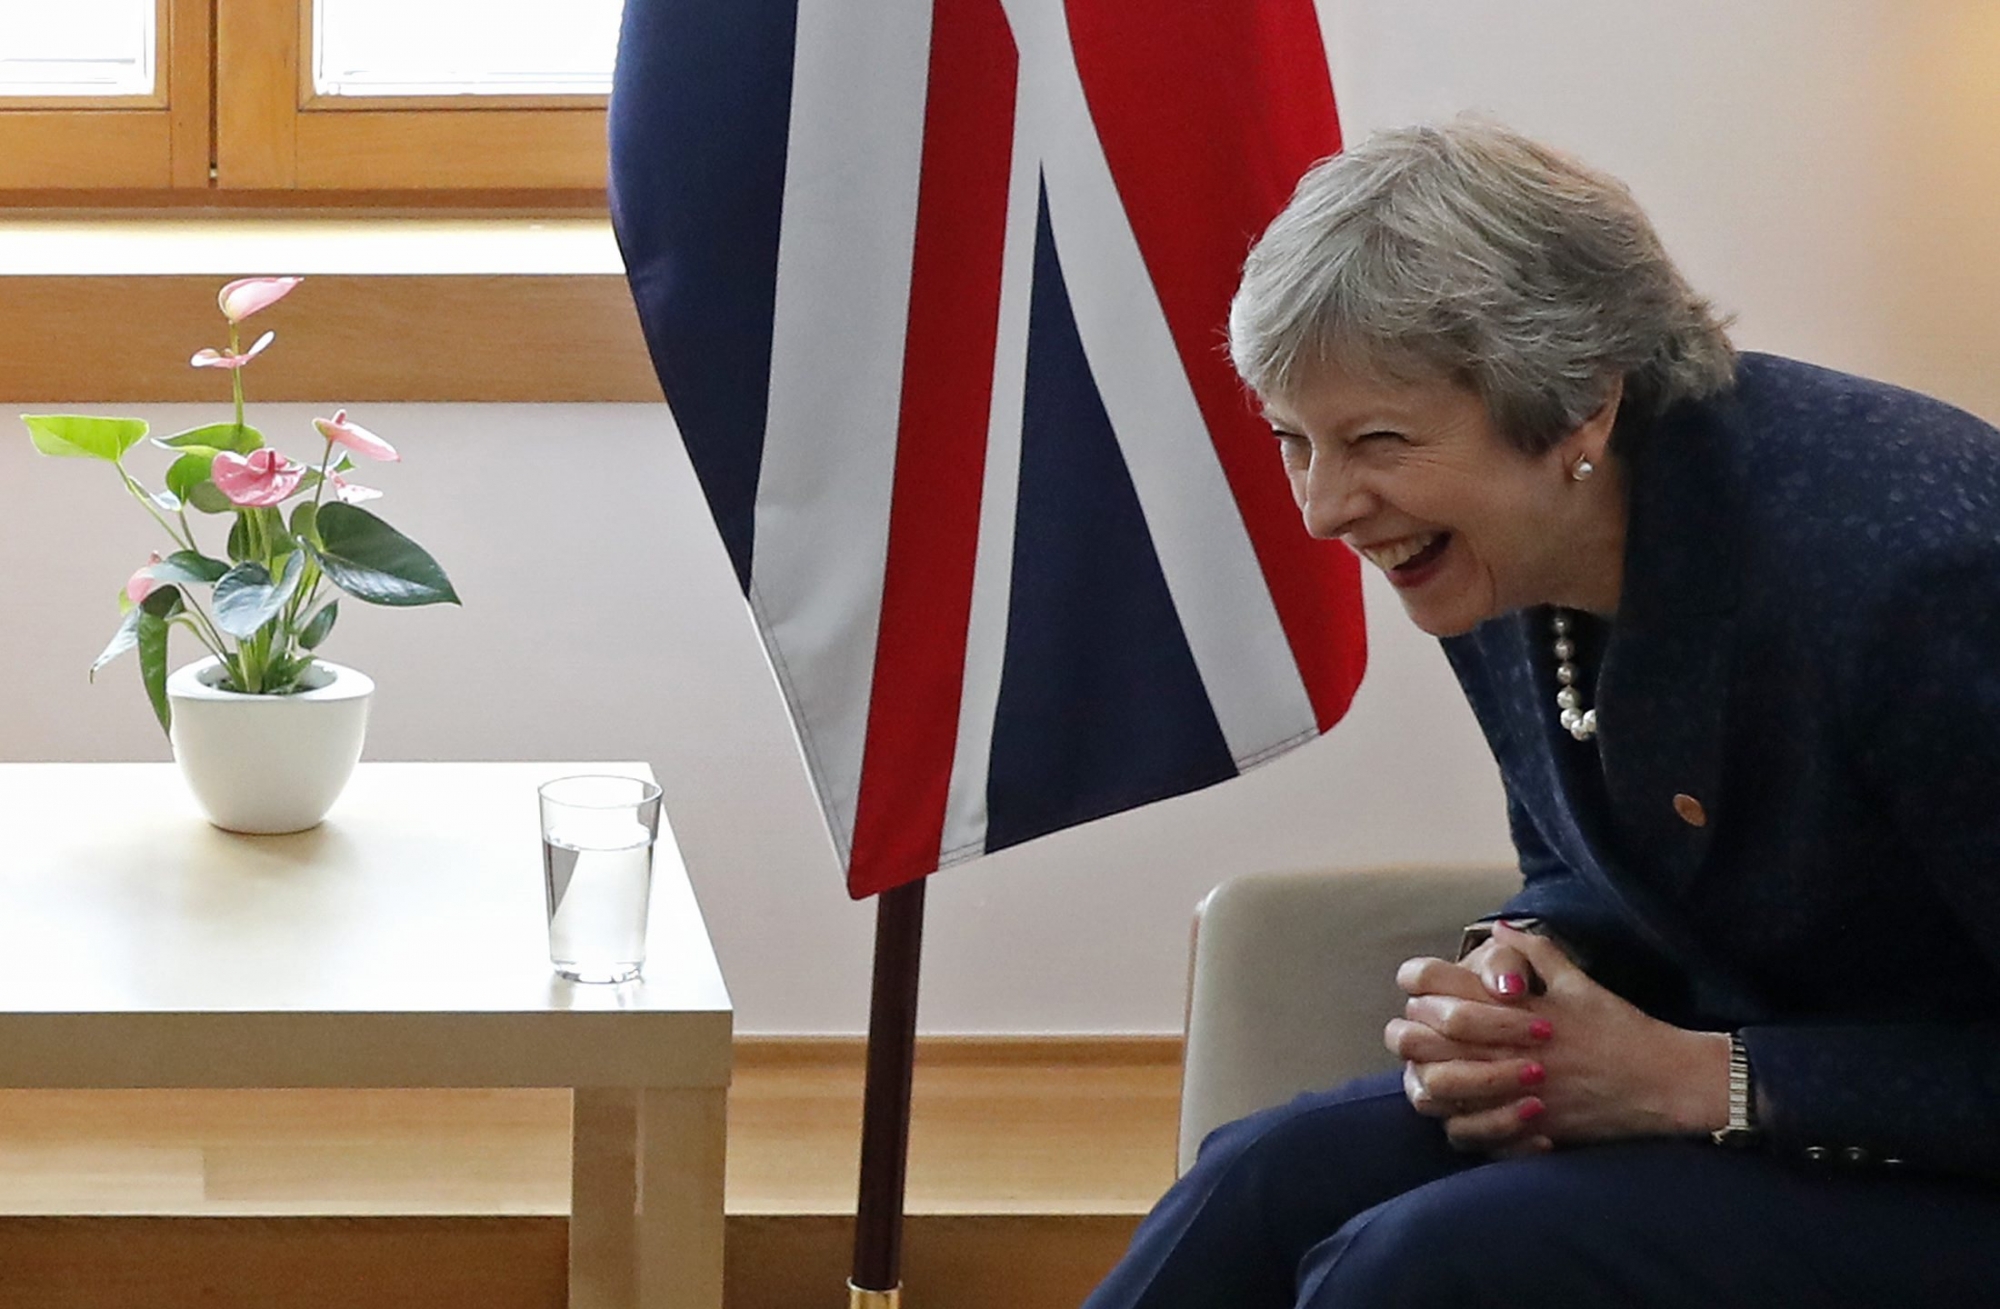 La première ministre britannique Theresa May est contestée au sein de son gouvernement même. Le Brexit divise.